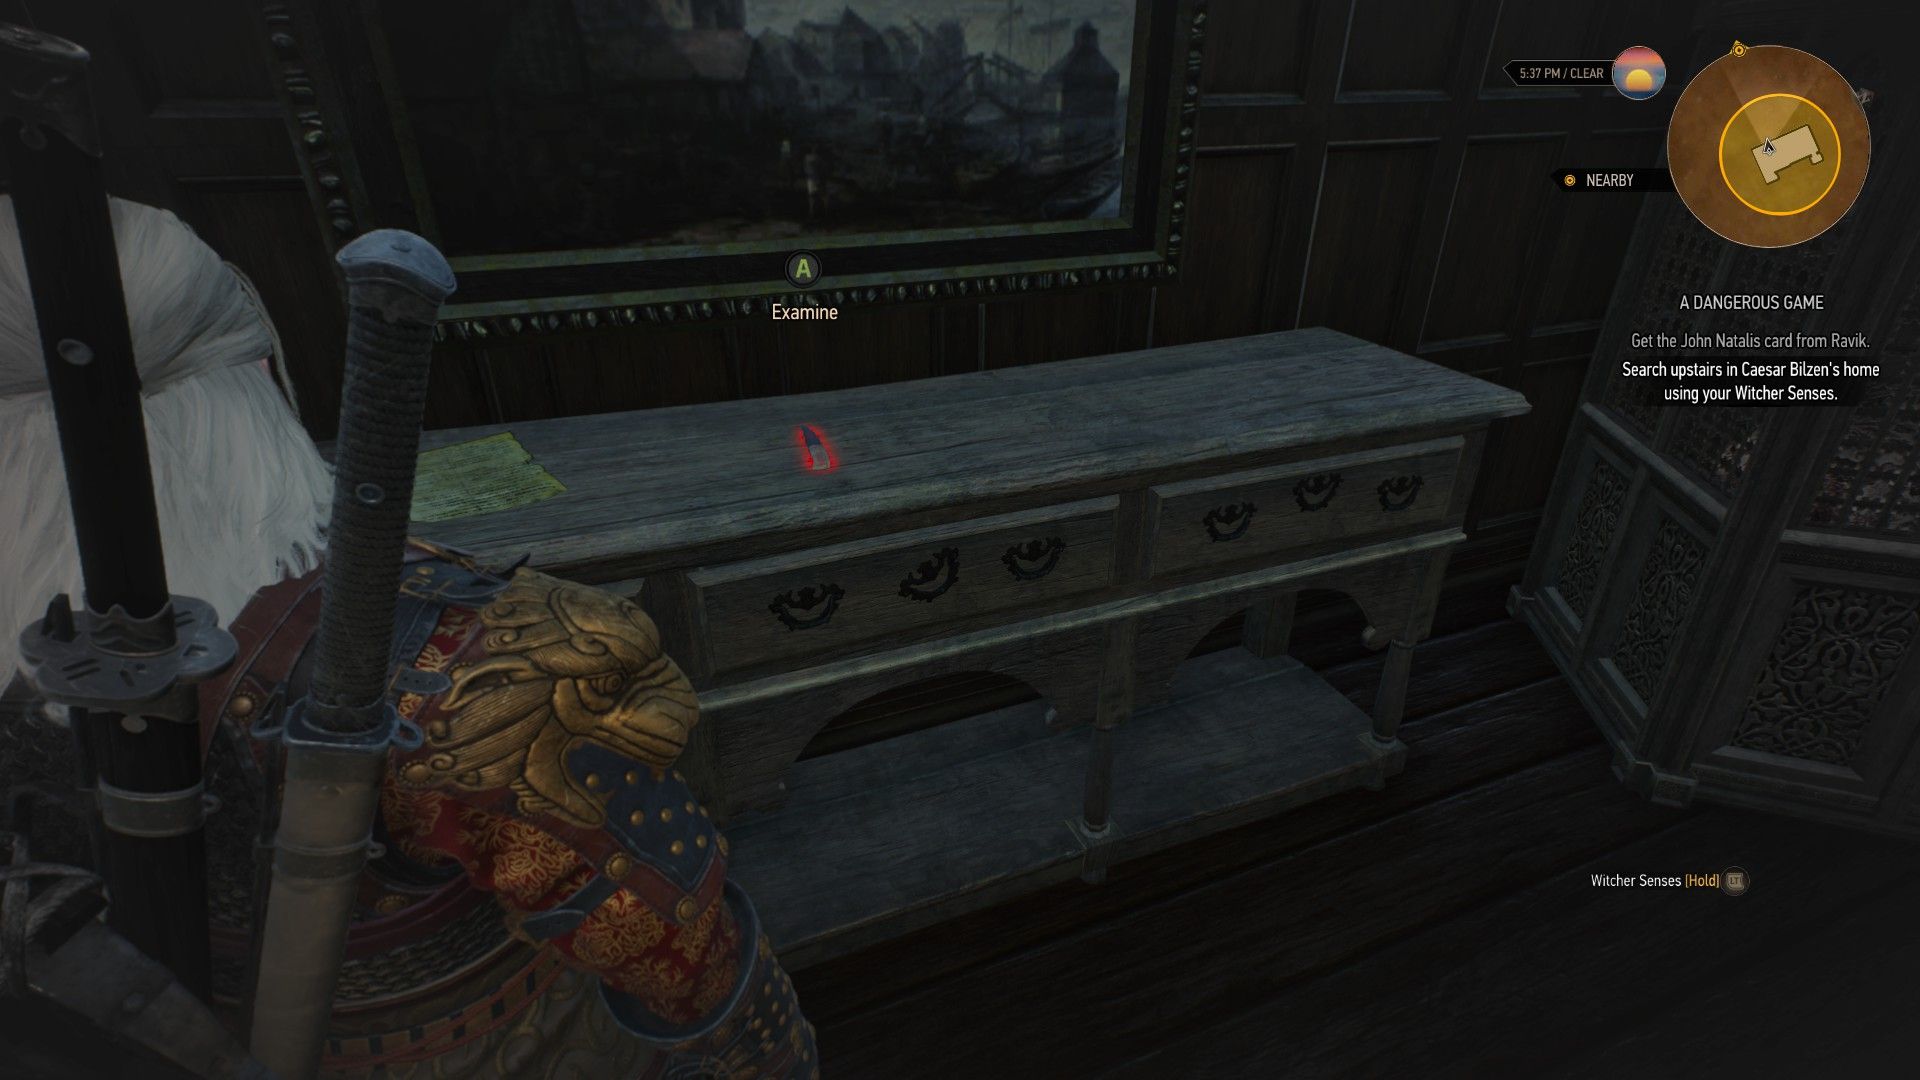 A screenshot of Geralt's Witcher Senses highlighting an innocuous knife used in a hidden mechanism.